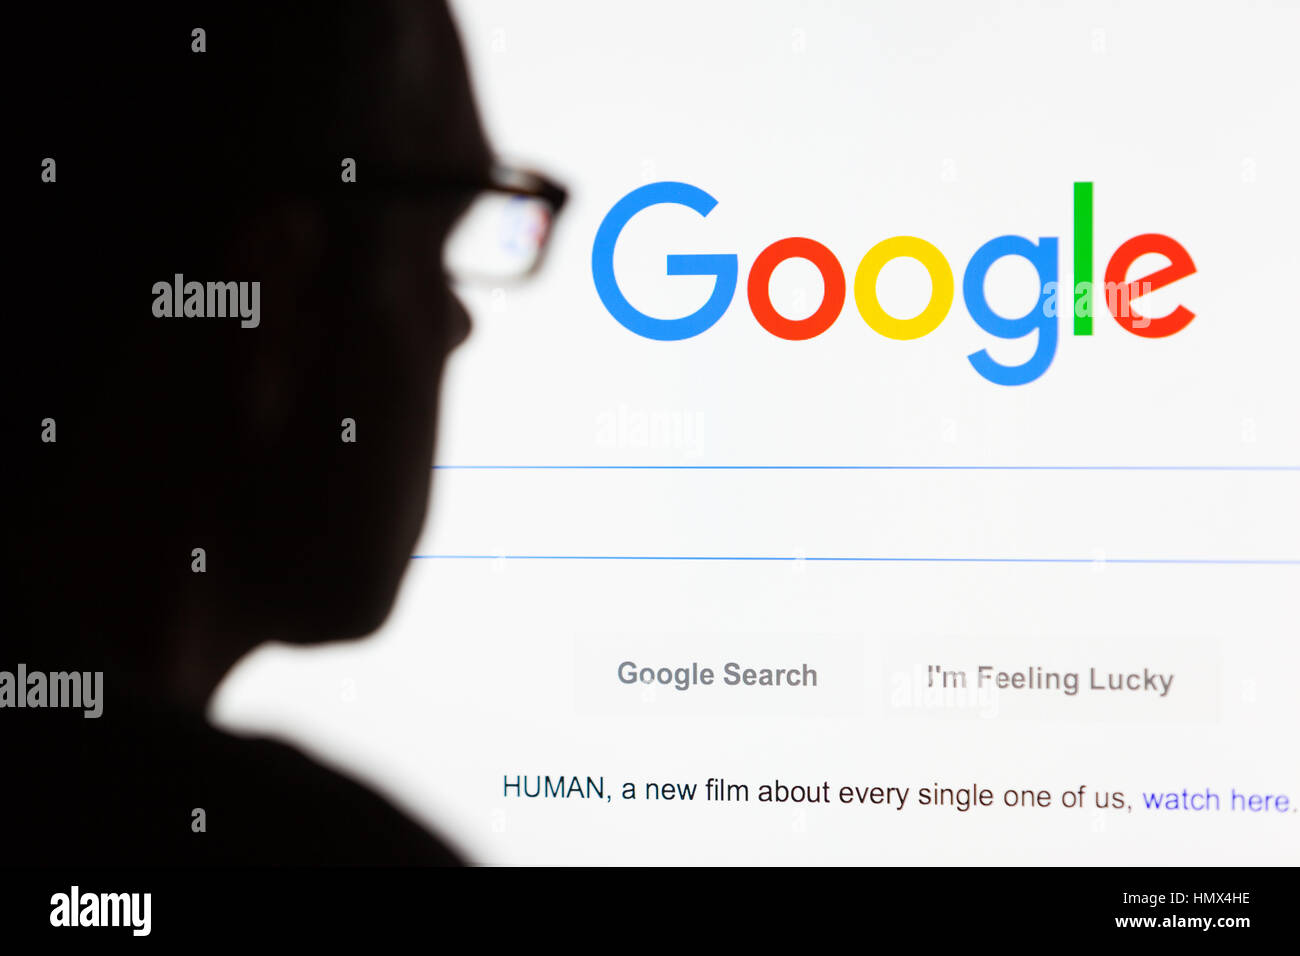 BATH, Royaume-Uni - 12 septembre 2015 : le Google.com Recherche Page d'accueil affichée sur un écran d'ordinateur LCD avec la silhouette de la tête d'un homme hors o Banque D'Images